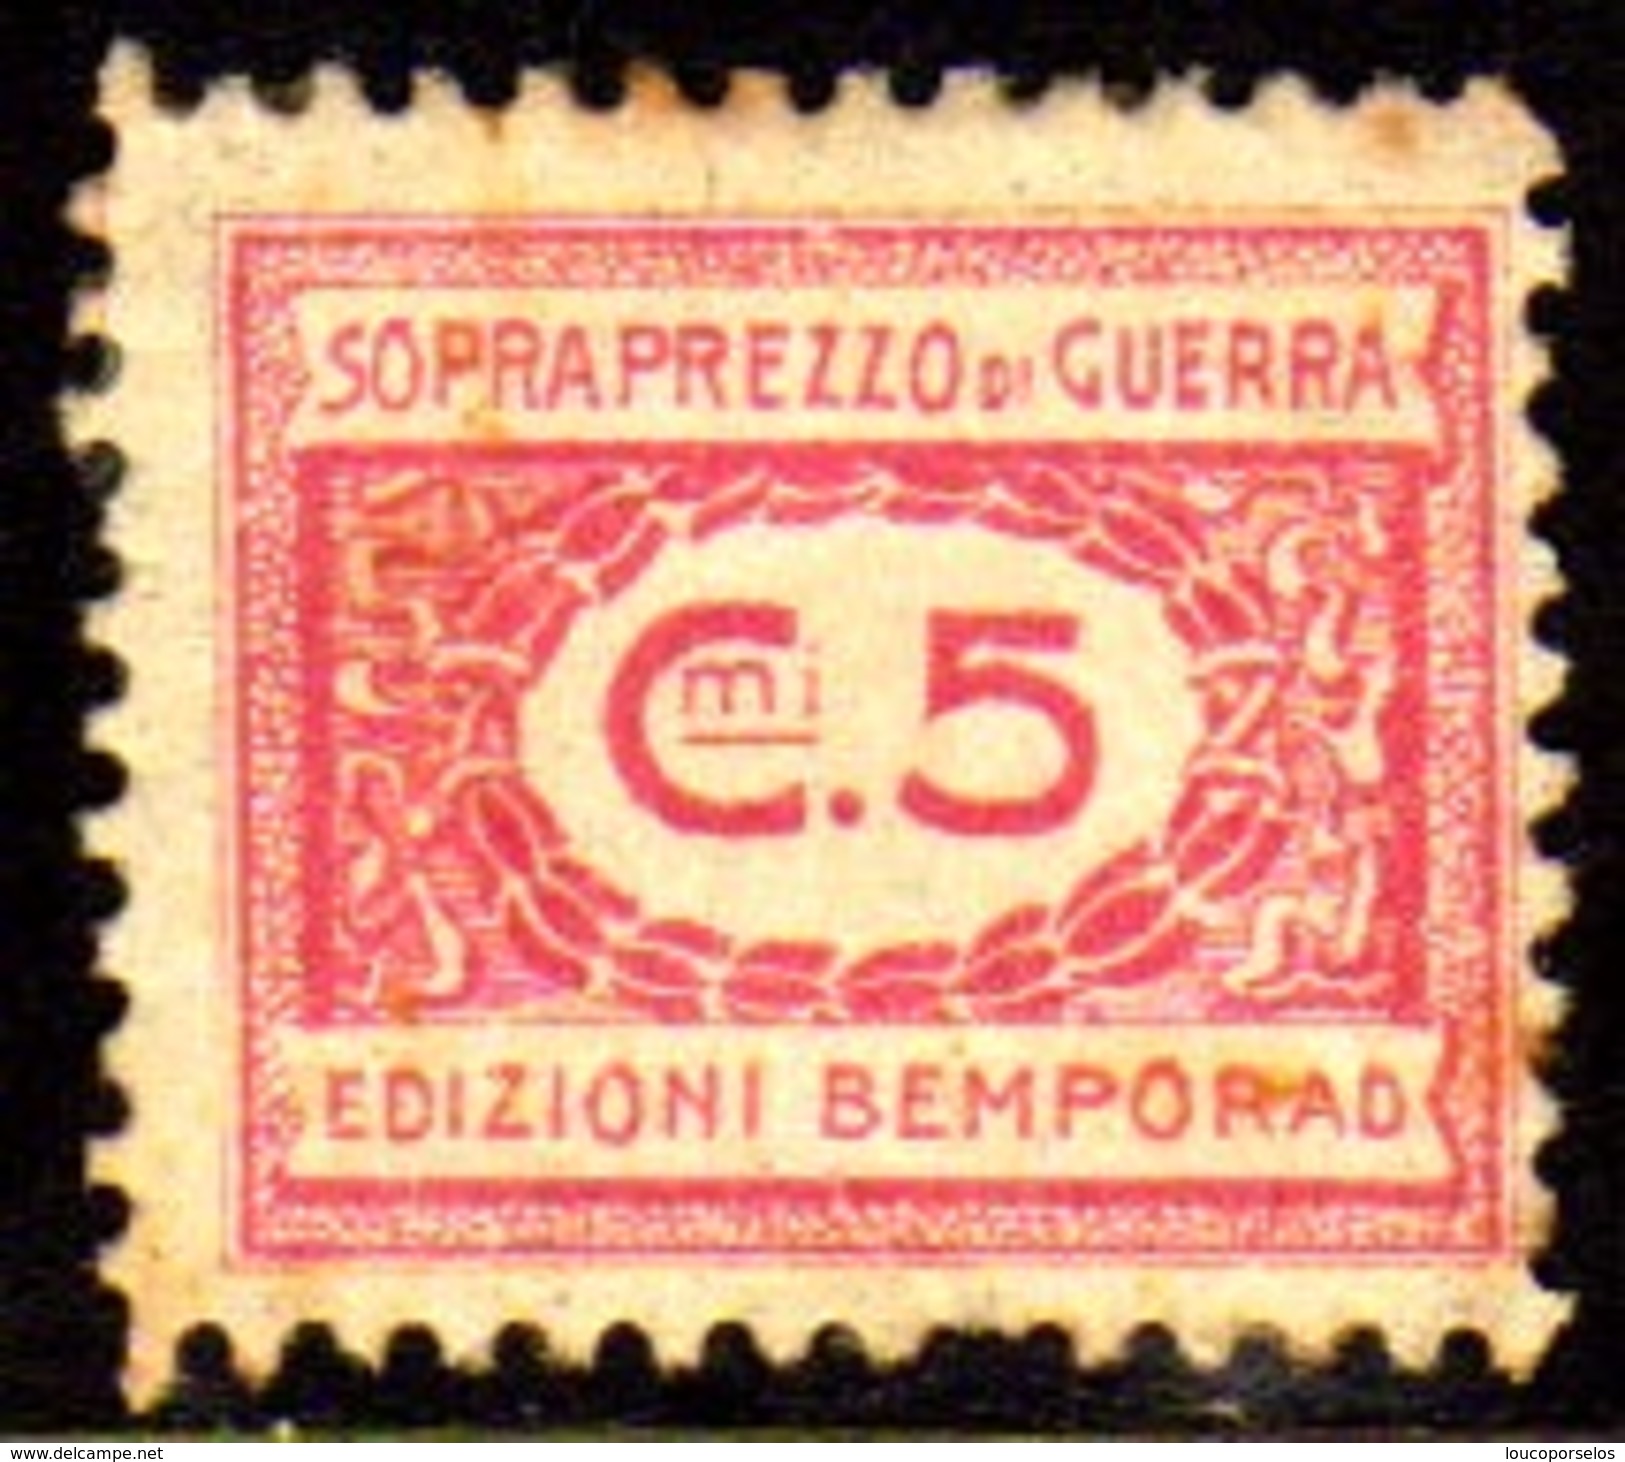 10535 Italia Selos De Sobrepreço De Guerra 5 Cts N (a) - Steuermarken